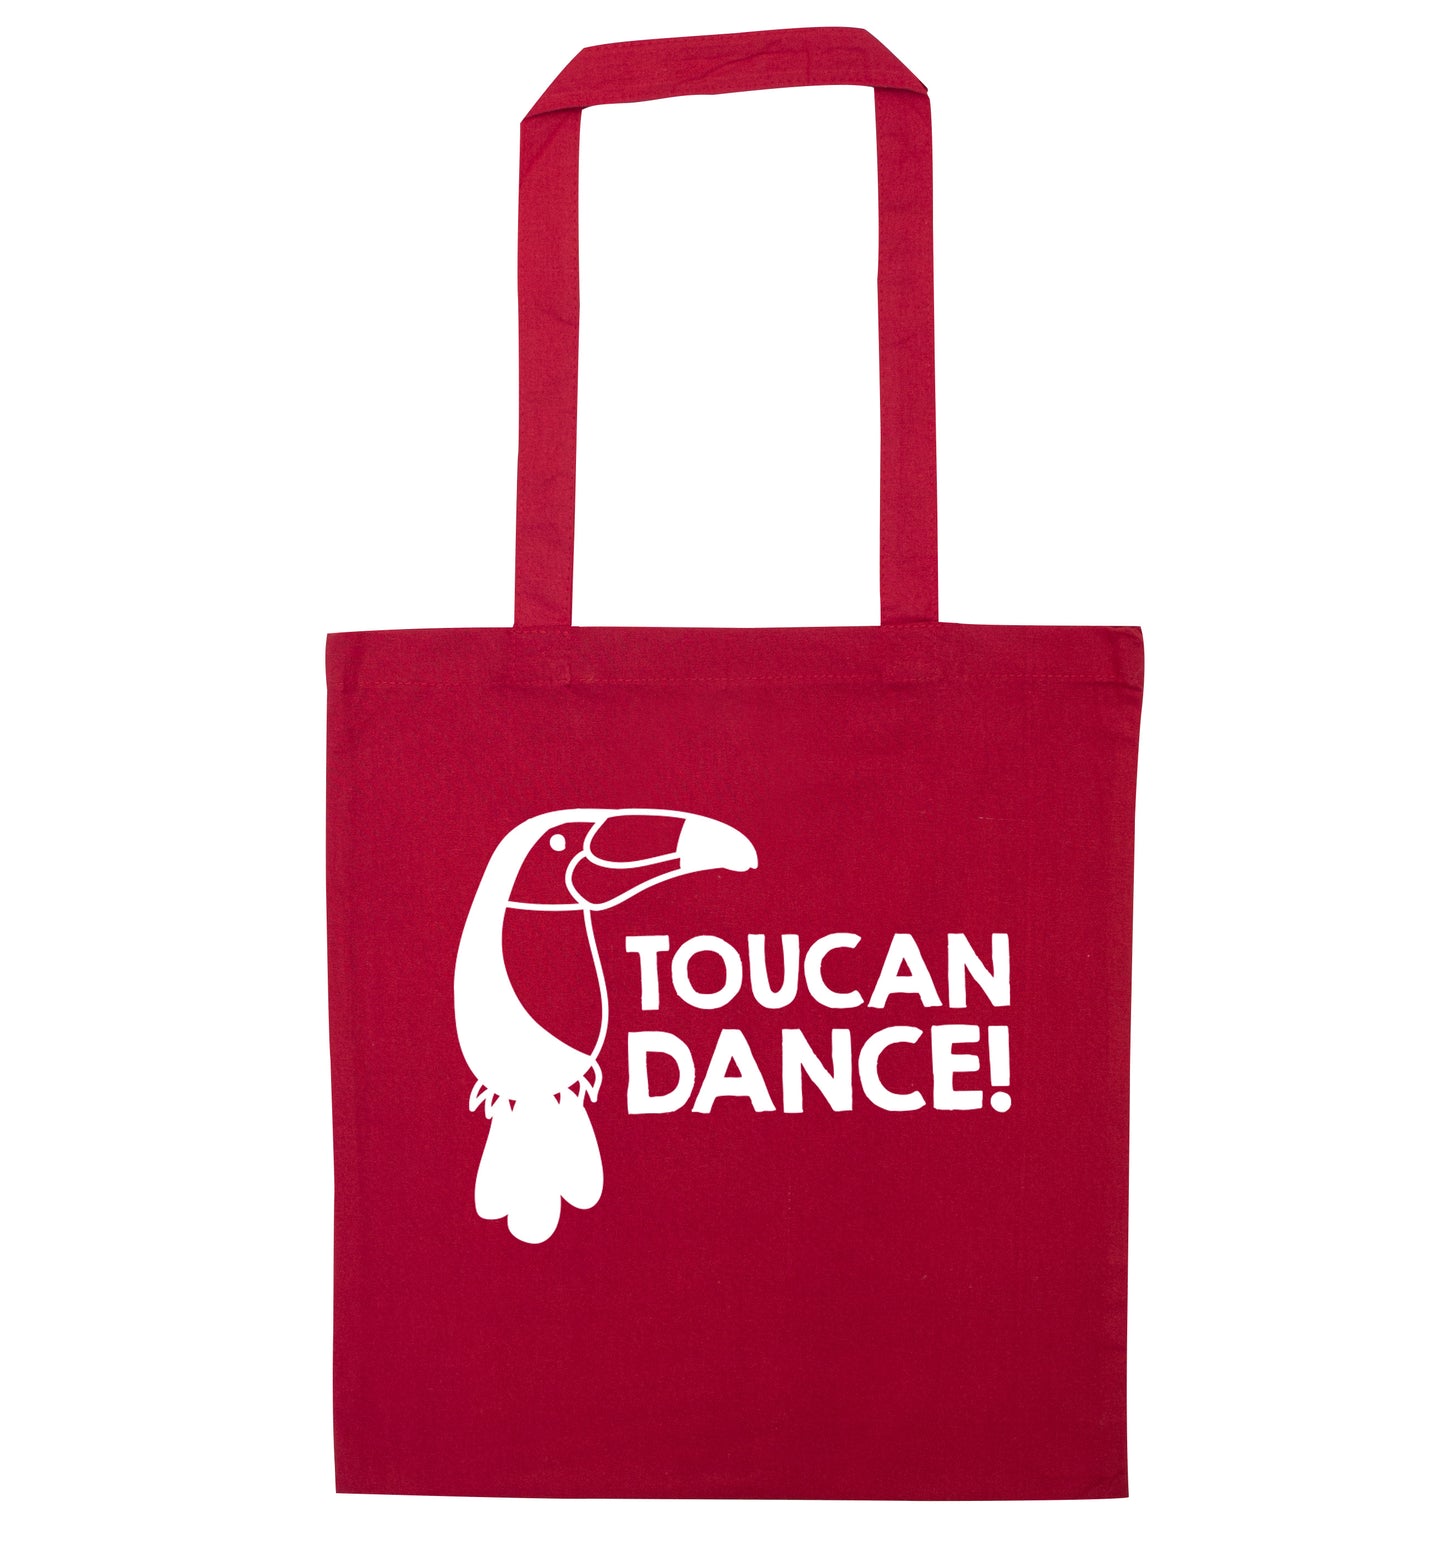 Toucan dance red tote bag